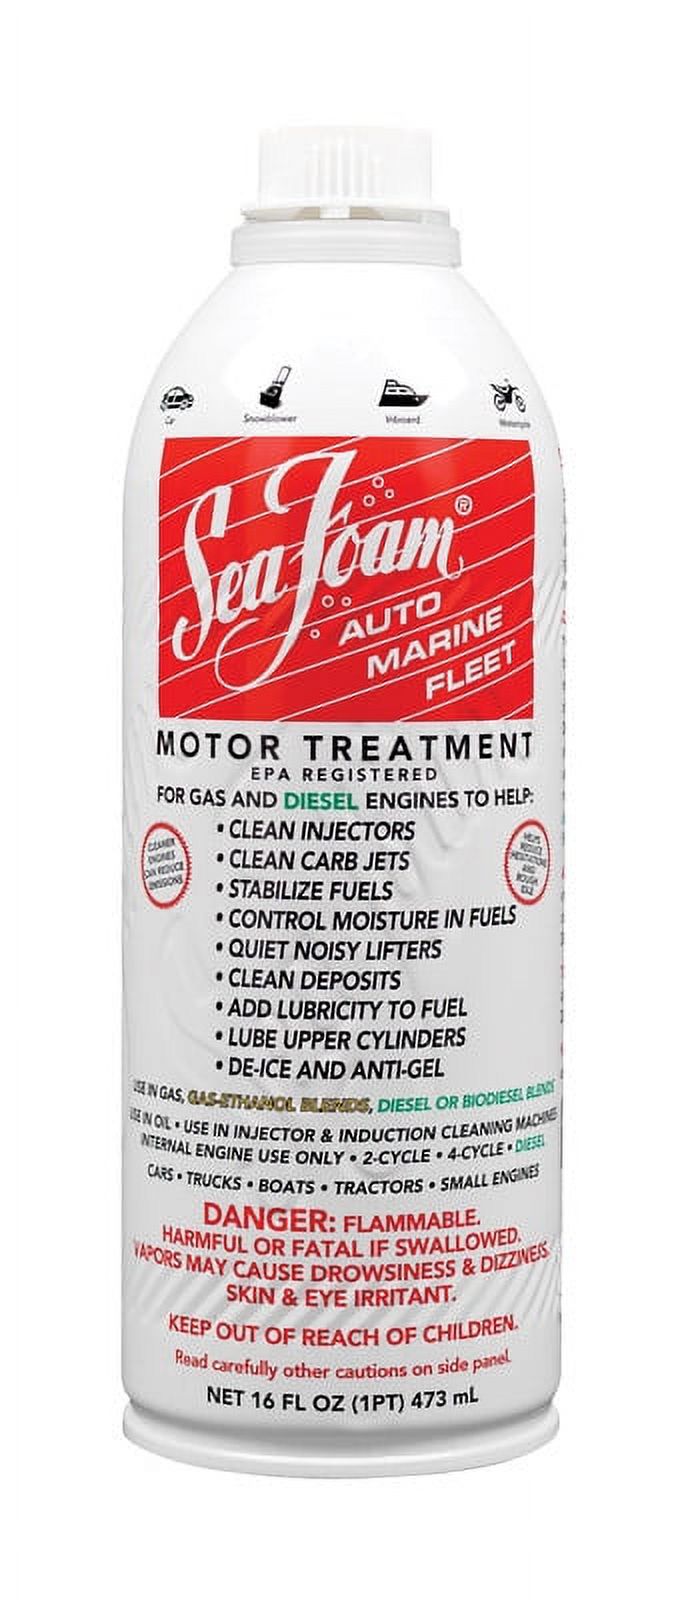 Sea Foam SF16 Motor Treatment Automotive Additive, 16 oz - image 1 of 5